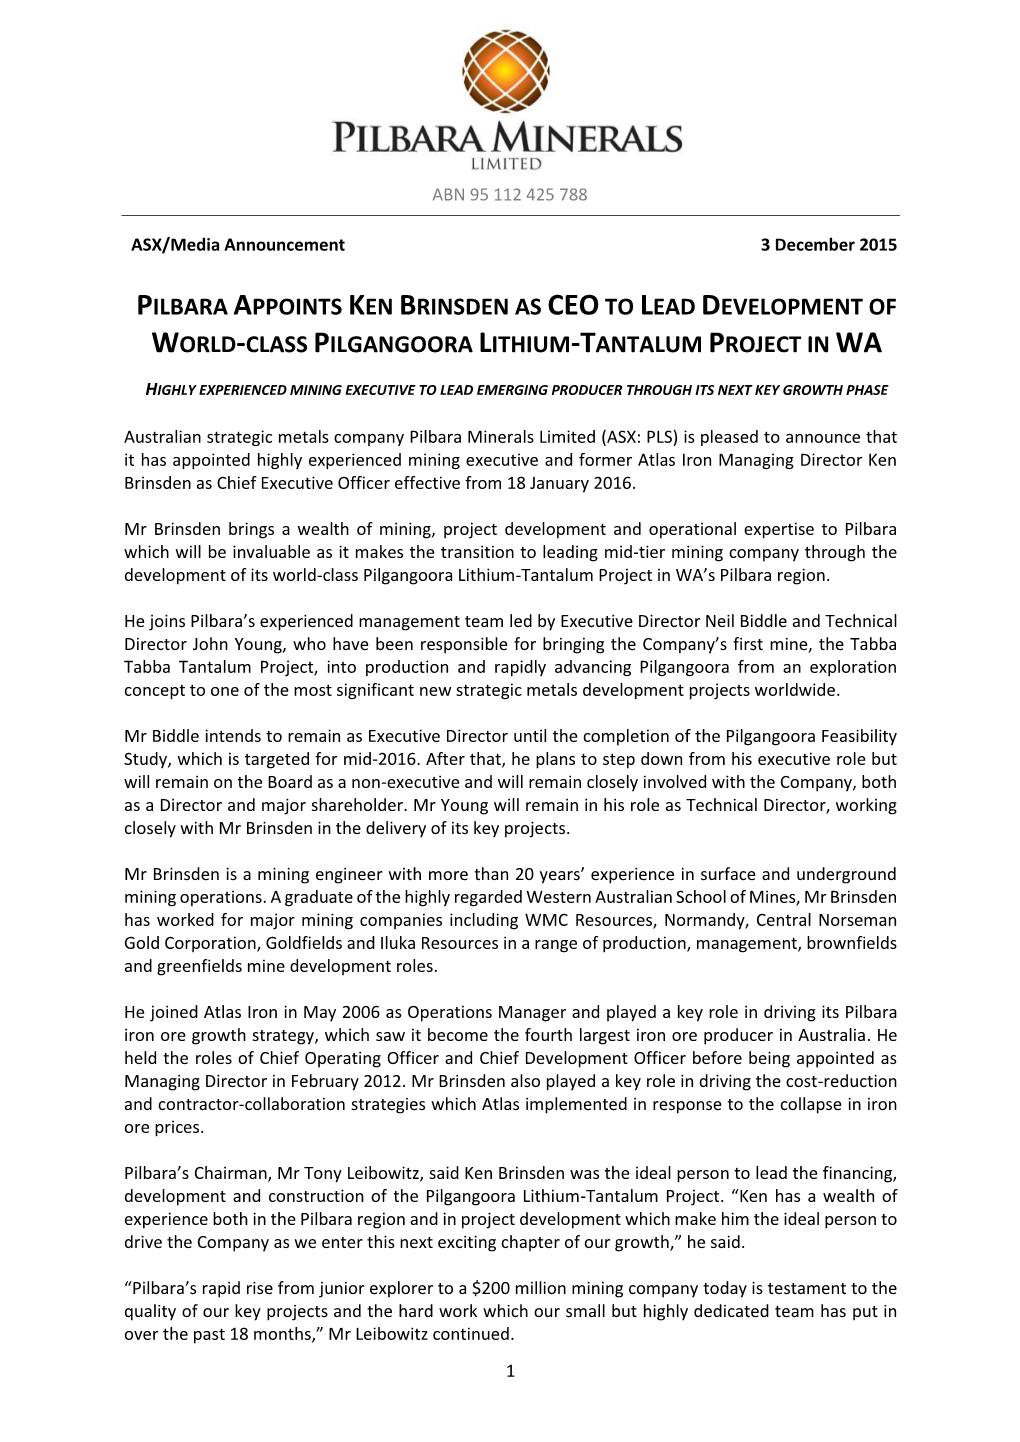 Pilbara Appoints Ken Brinsden As Ceoto Lead Development of World